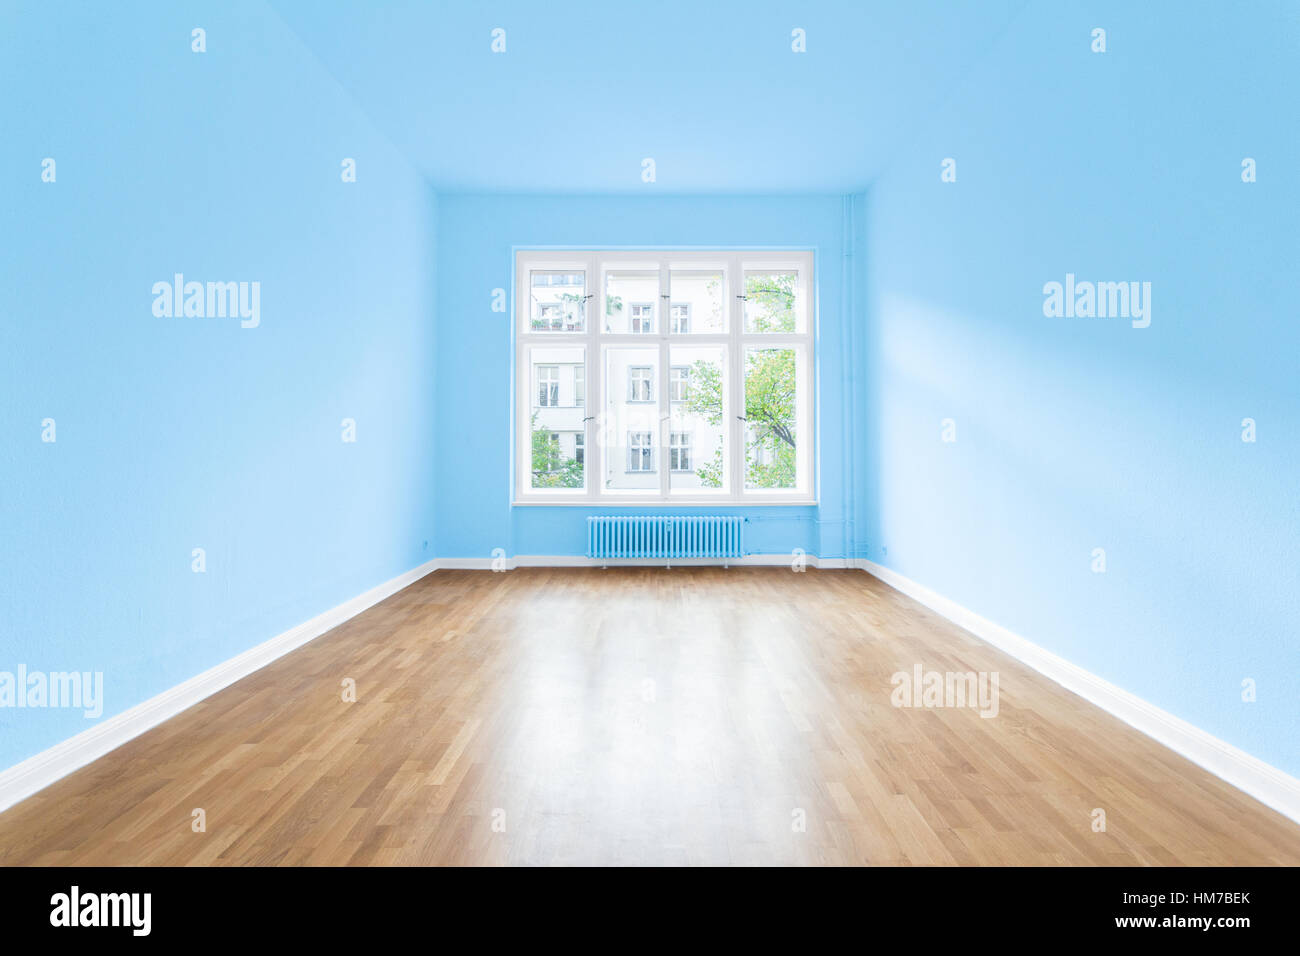 Appartement chambre vide , murs de couleur bleu ciel Banque D'Images